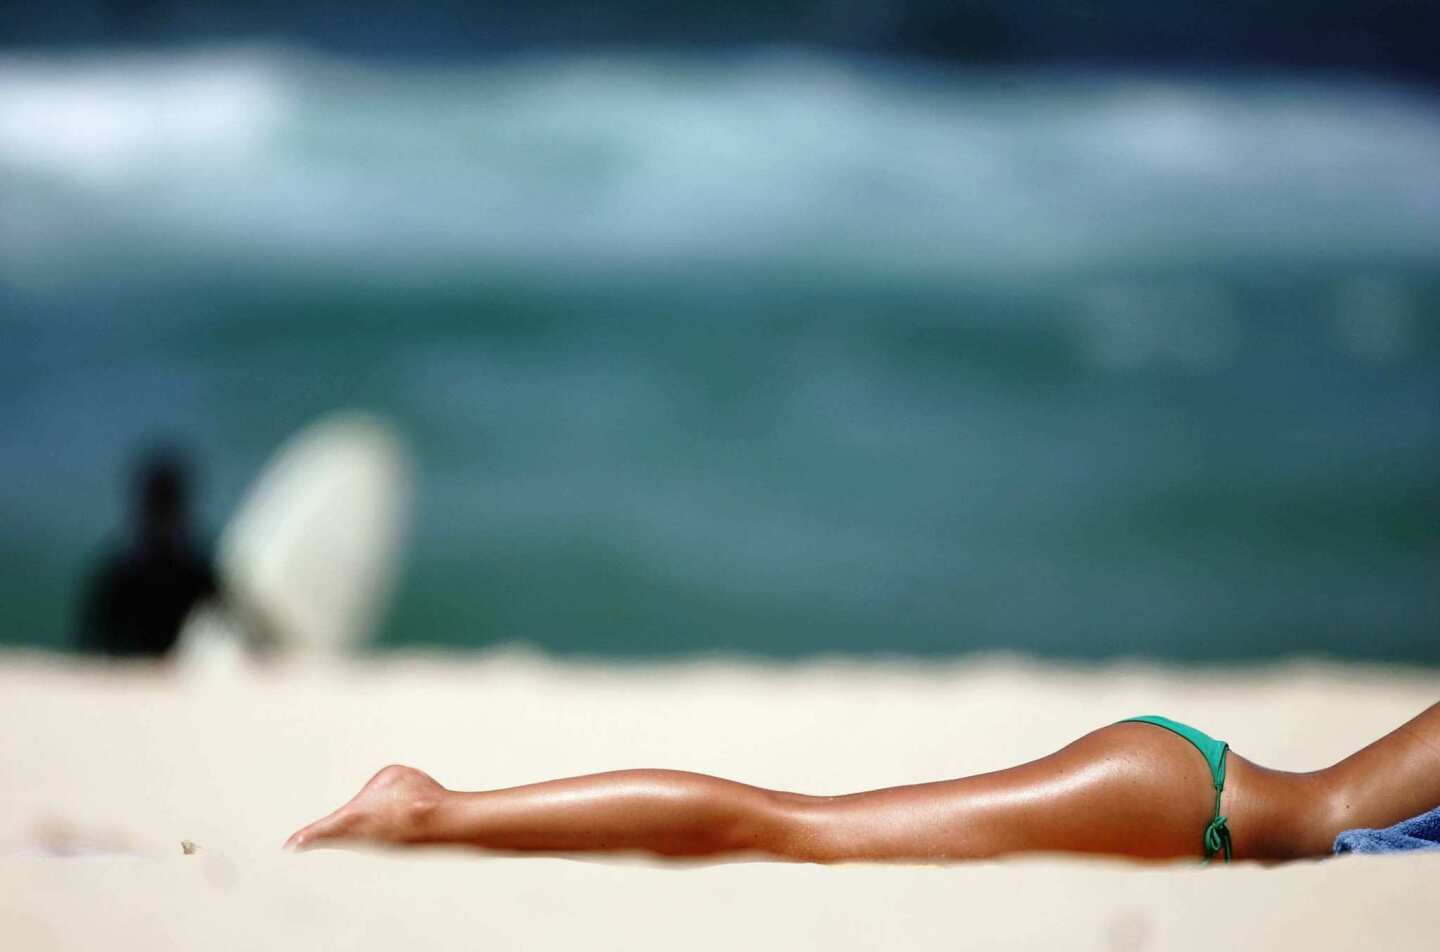 A sunbather soaks up the summer sun on Bondi Beach.